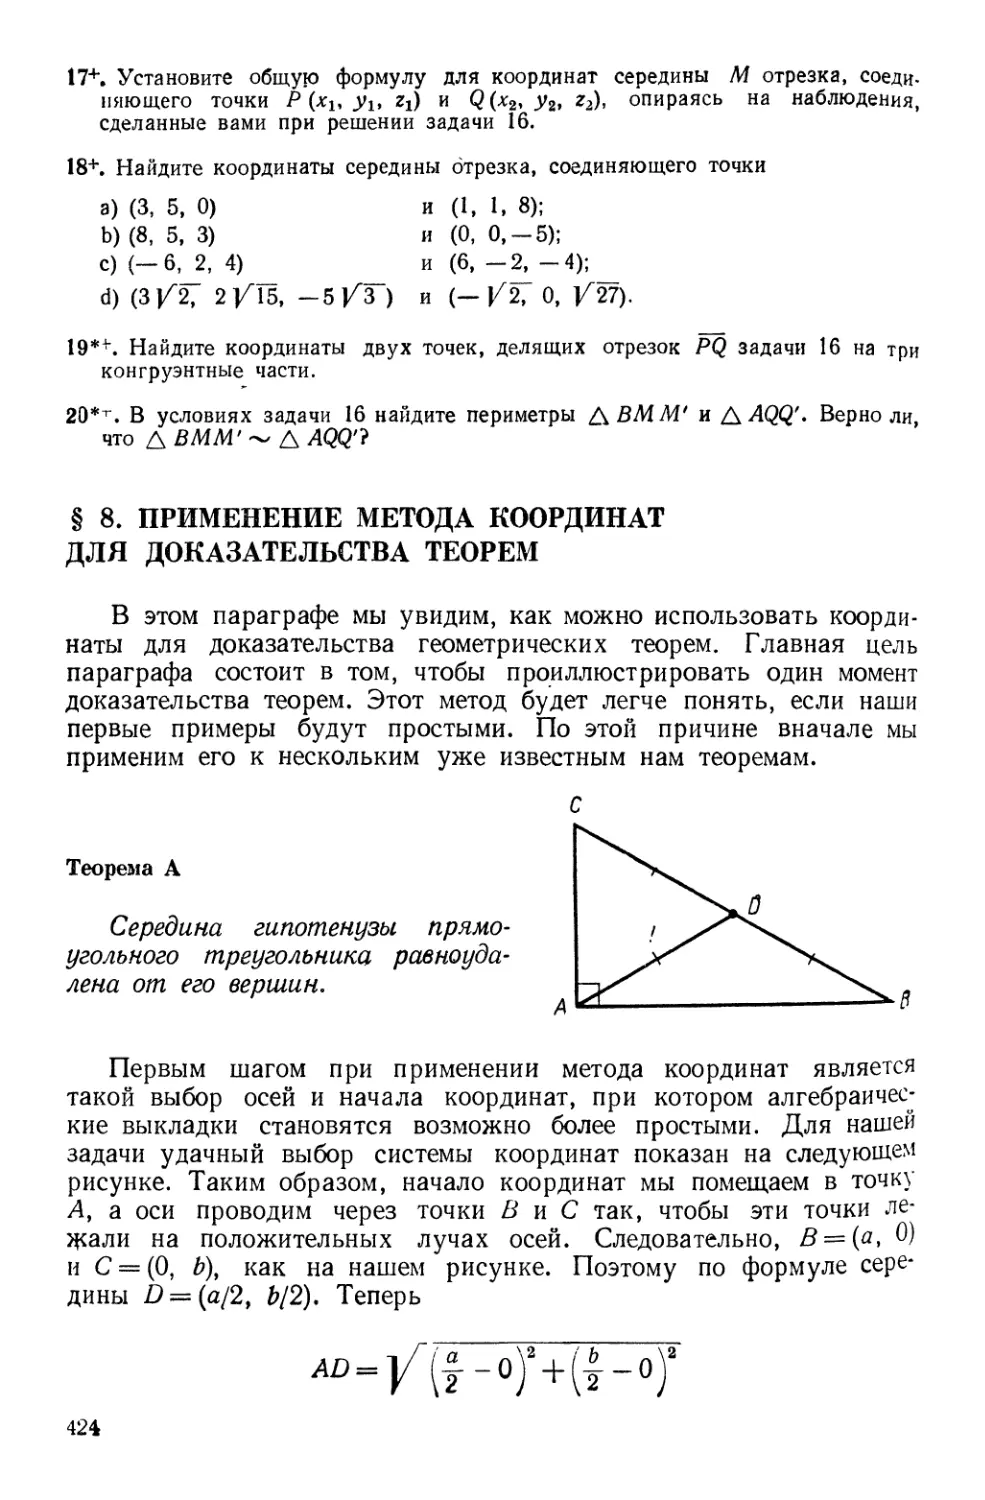 § 8. Применение метода координат для доказательства теорем